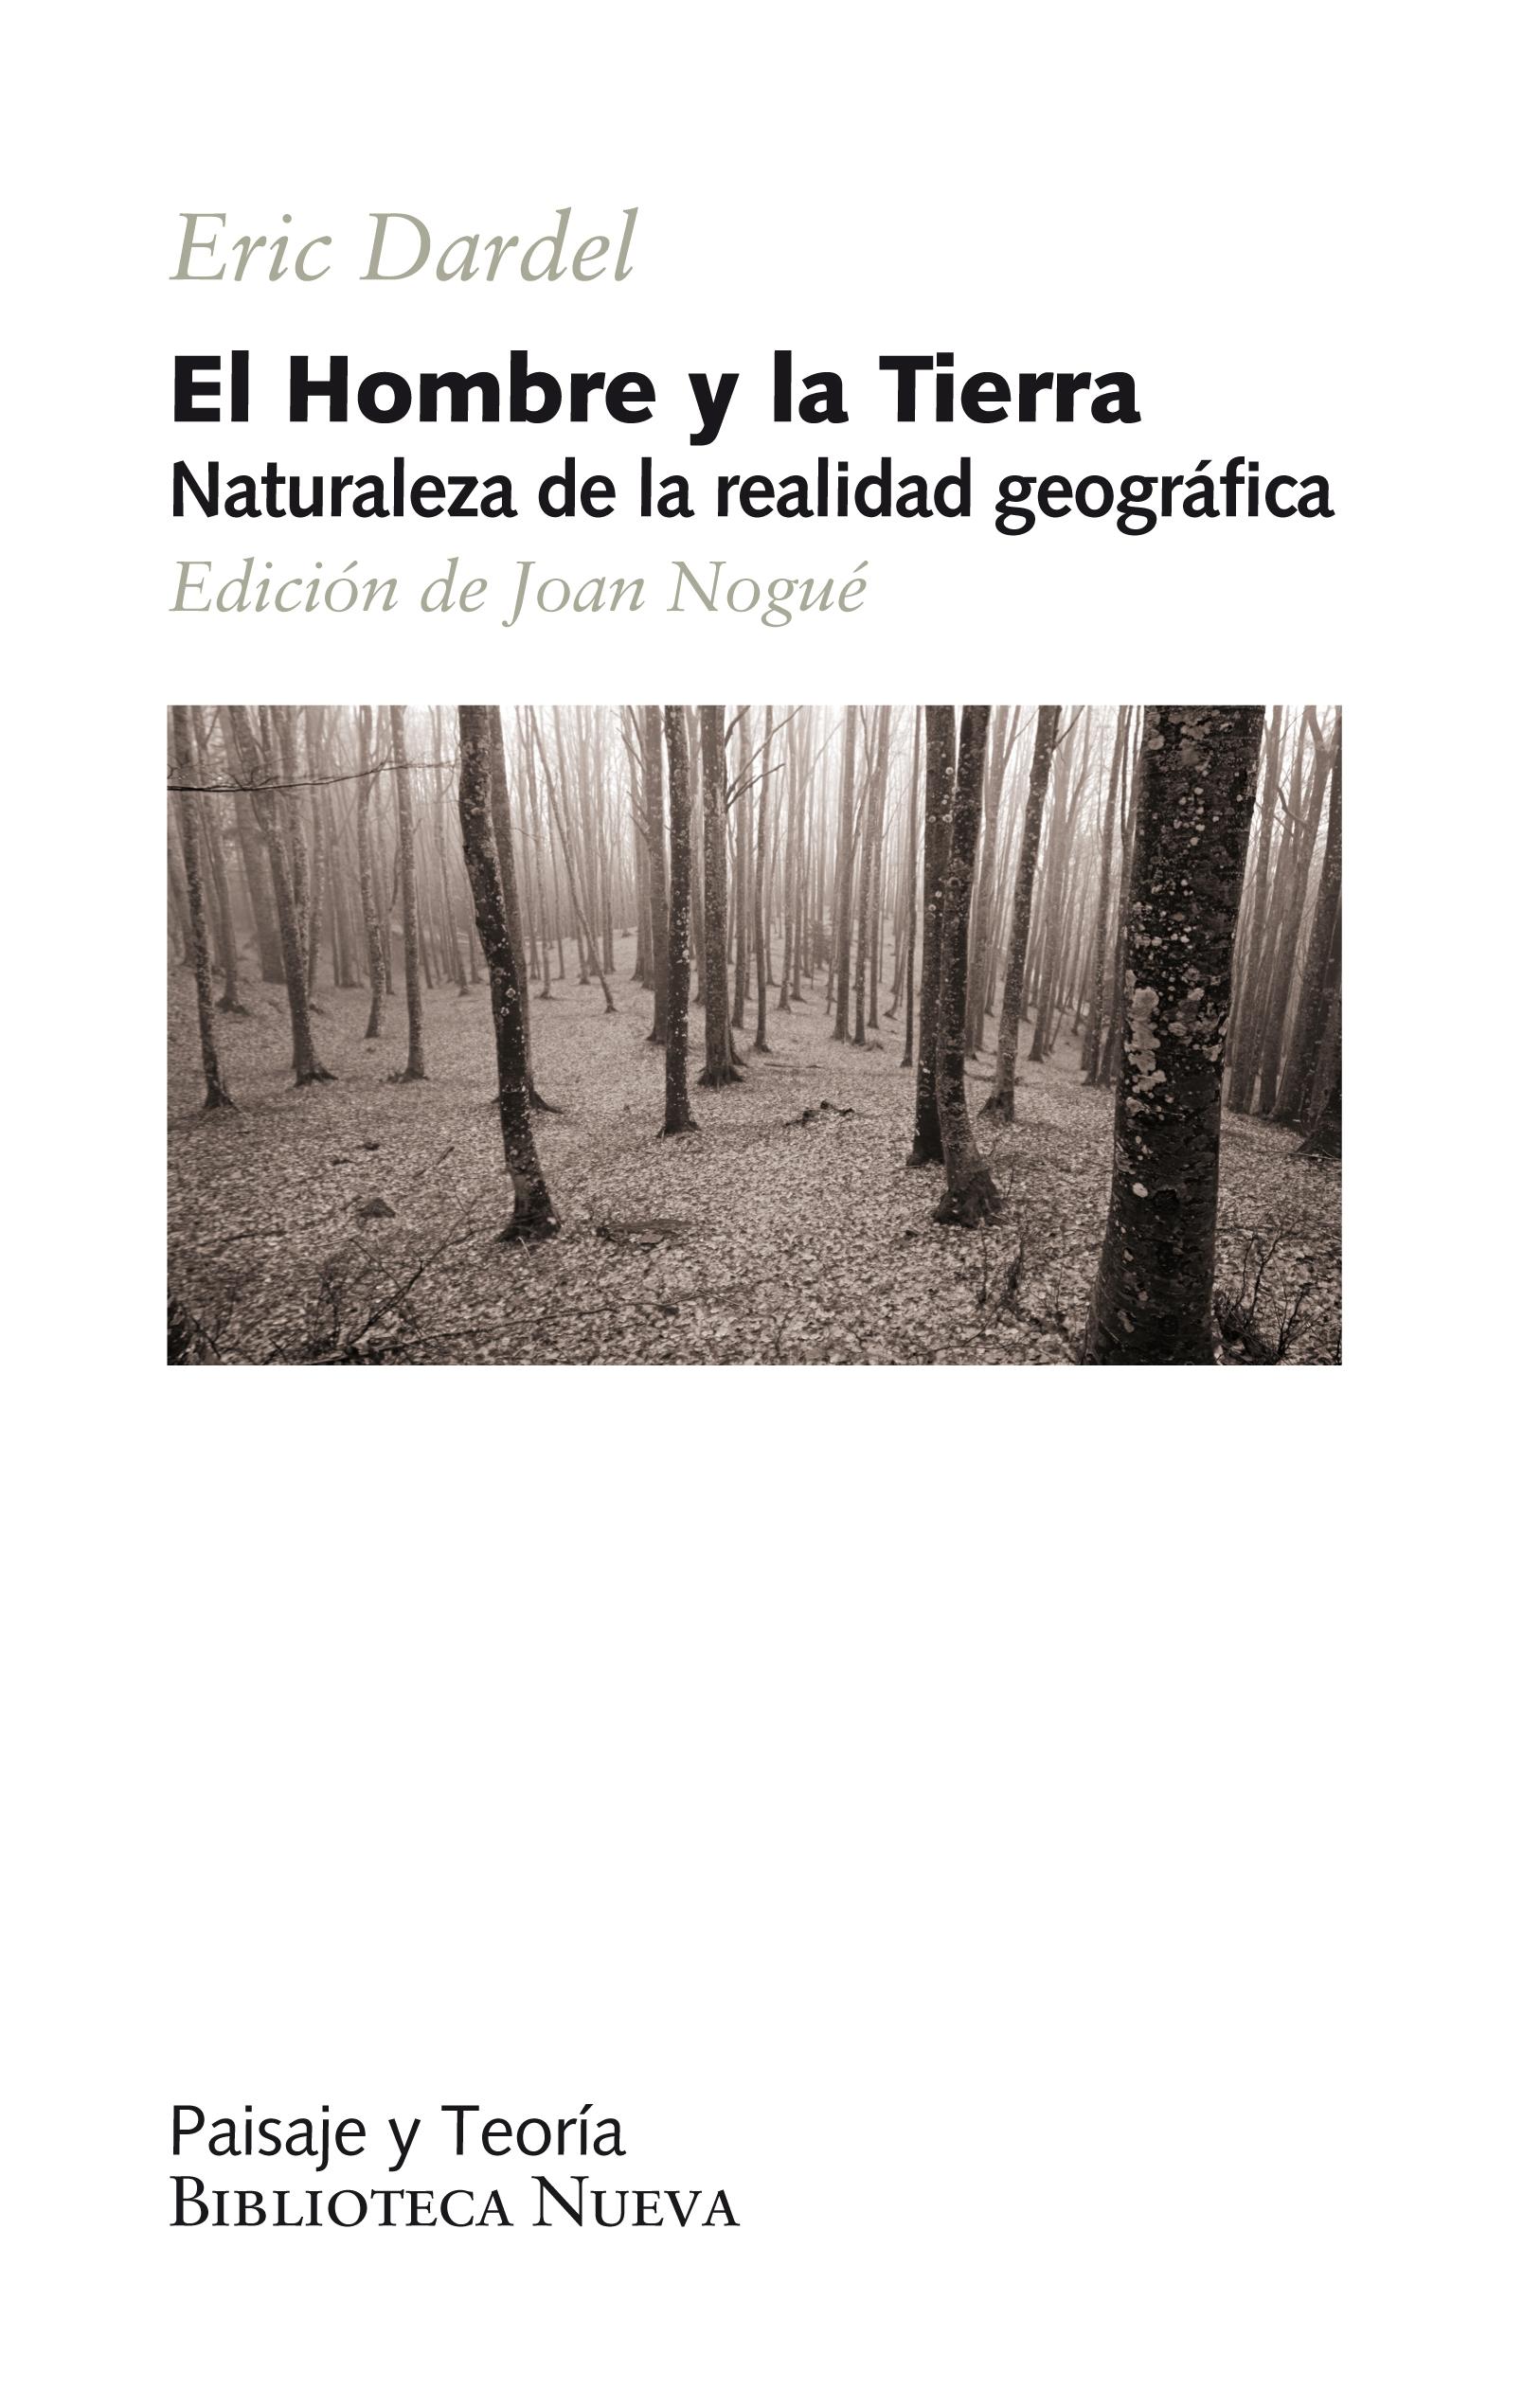 EL HOMBRE Y LA TIERRA "Naturaleza de la realidad geográfica"